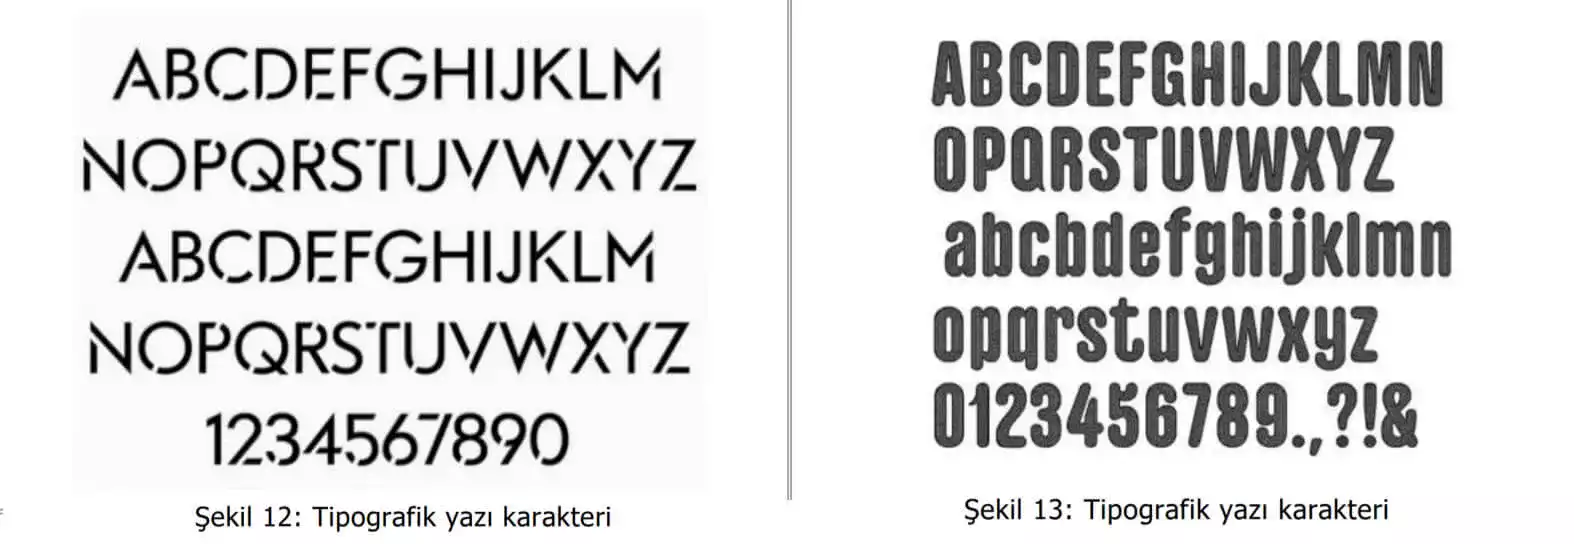 tipografik yazı karakter örnekleri-Fatih Patent